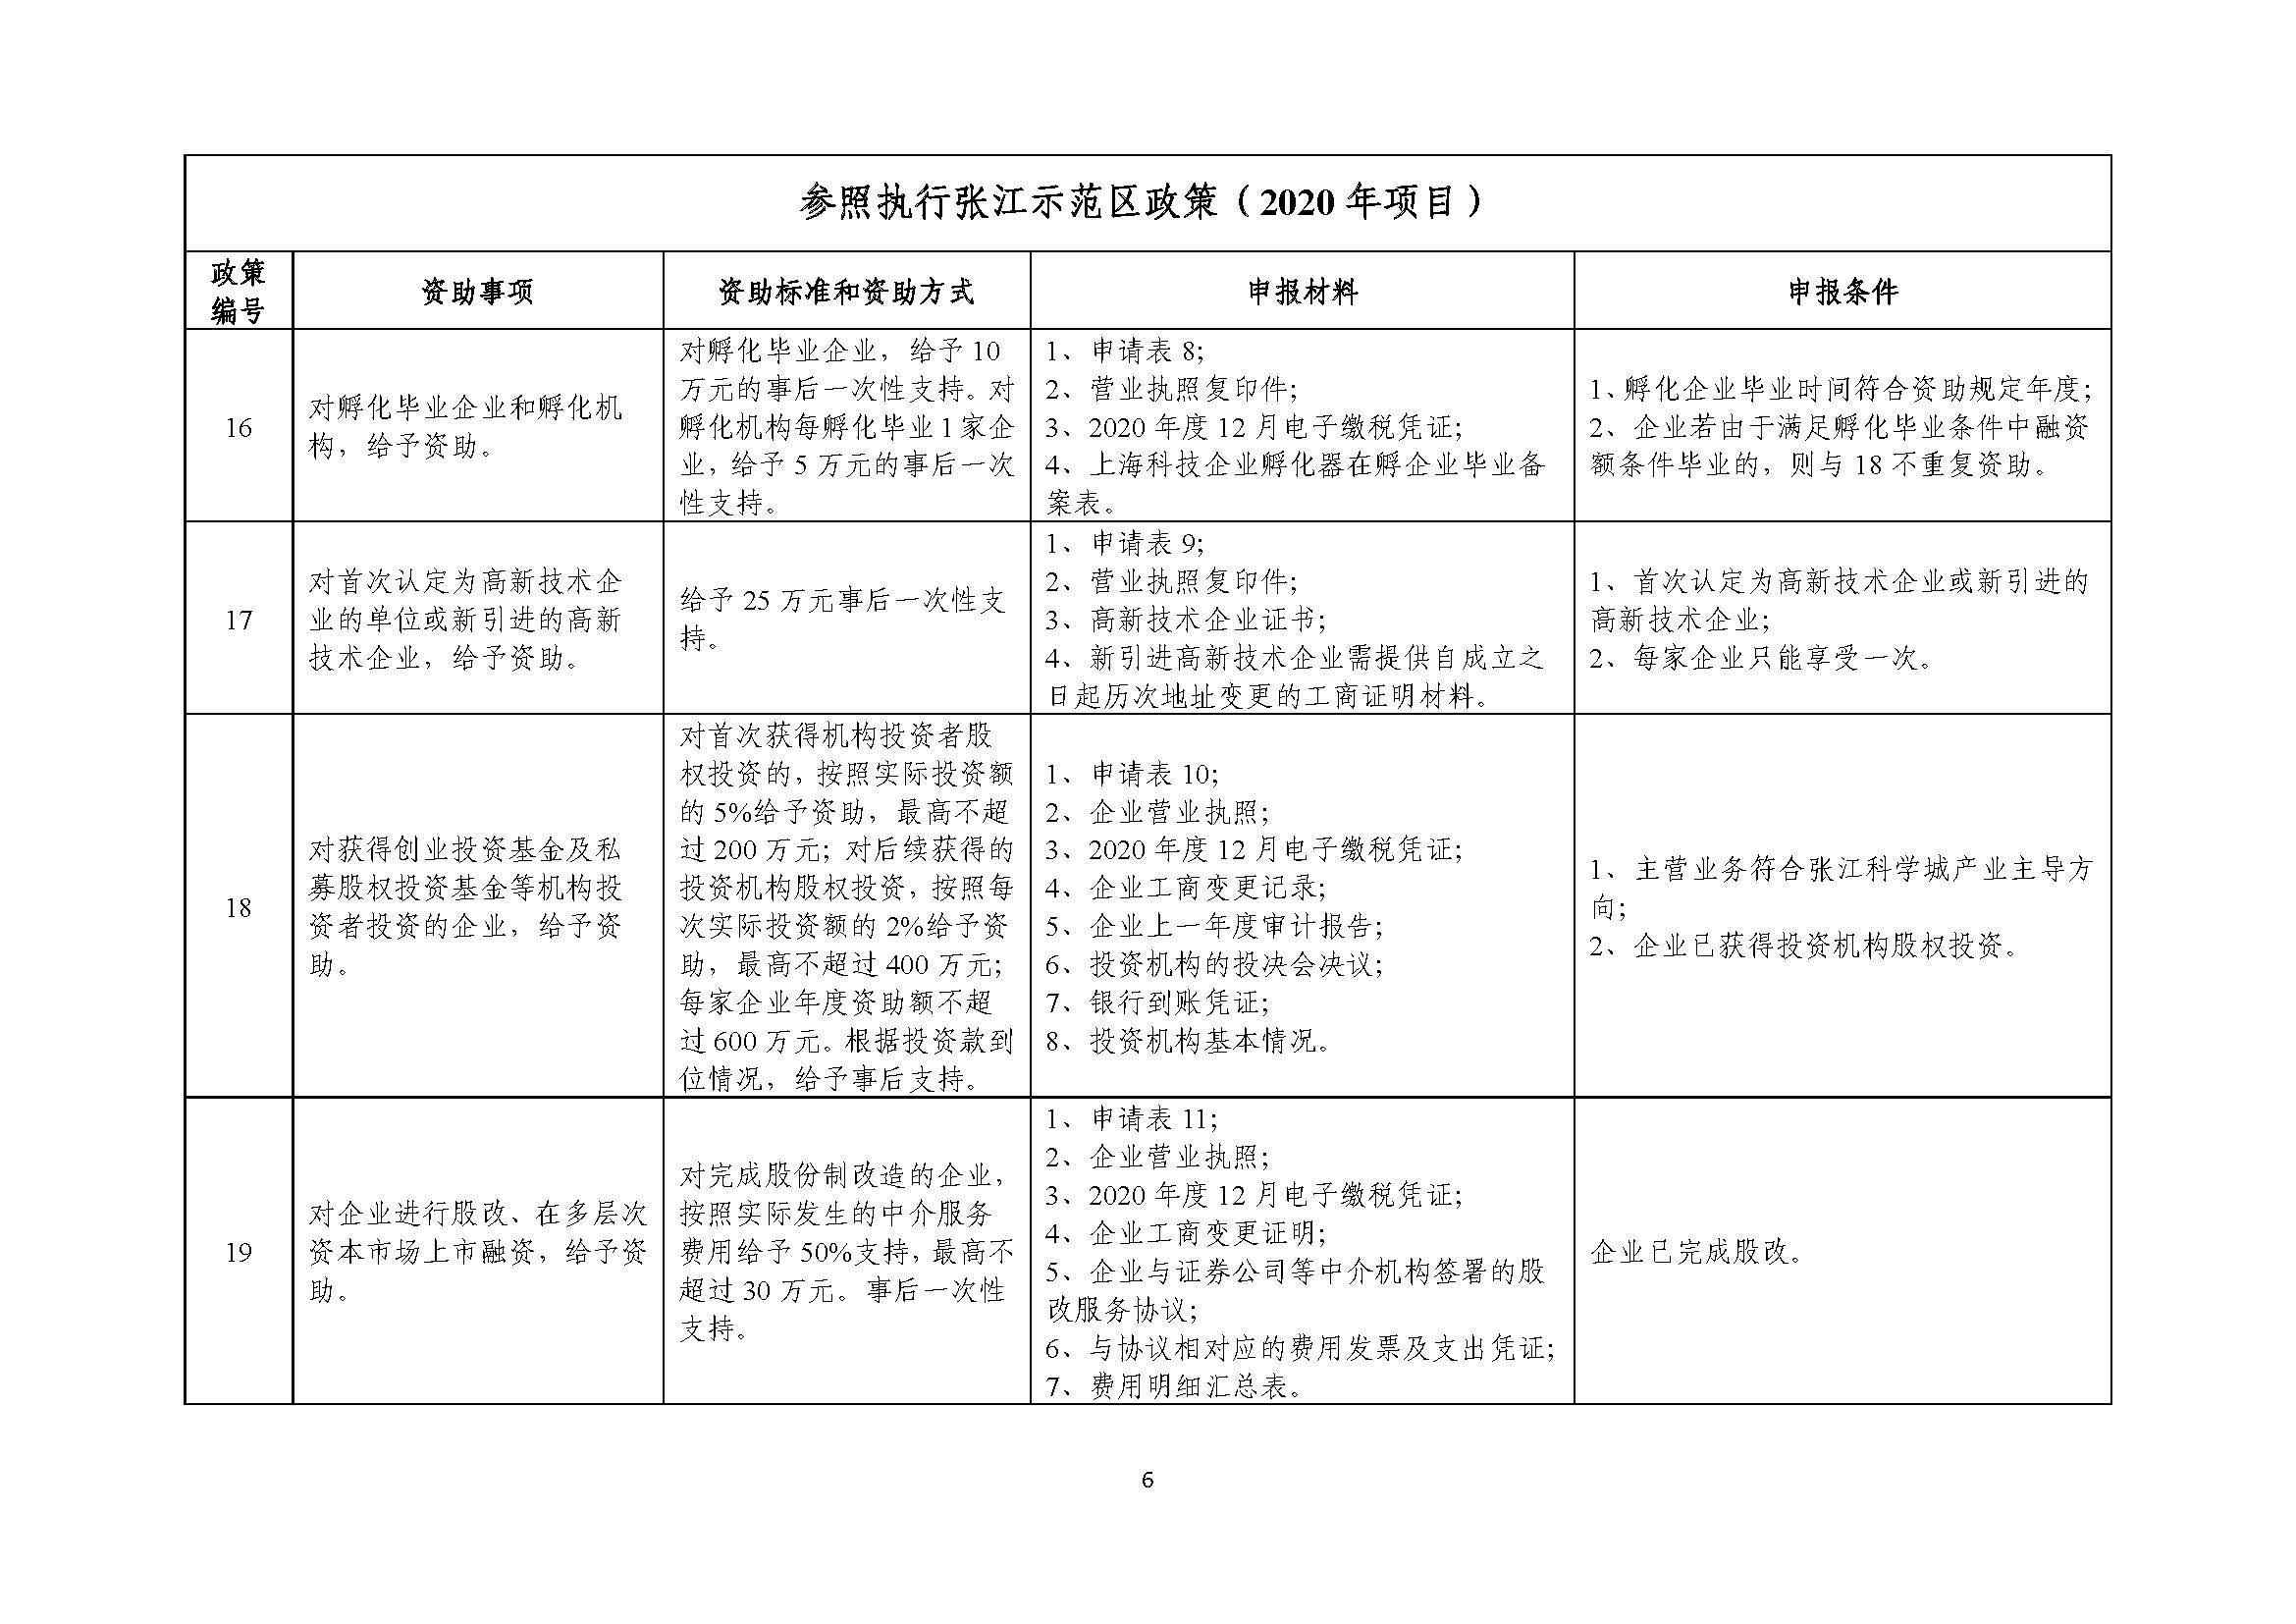 2021年张江科学城专项政策申报指南_页面_06.jpg